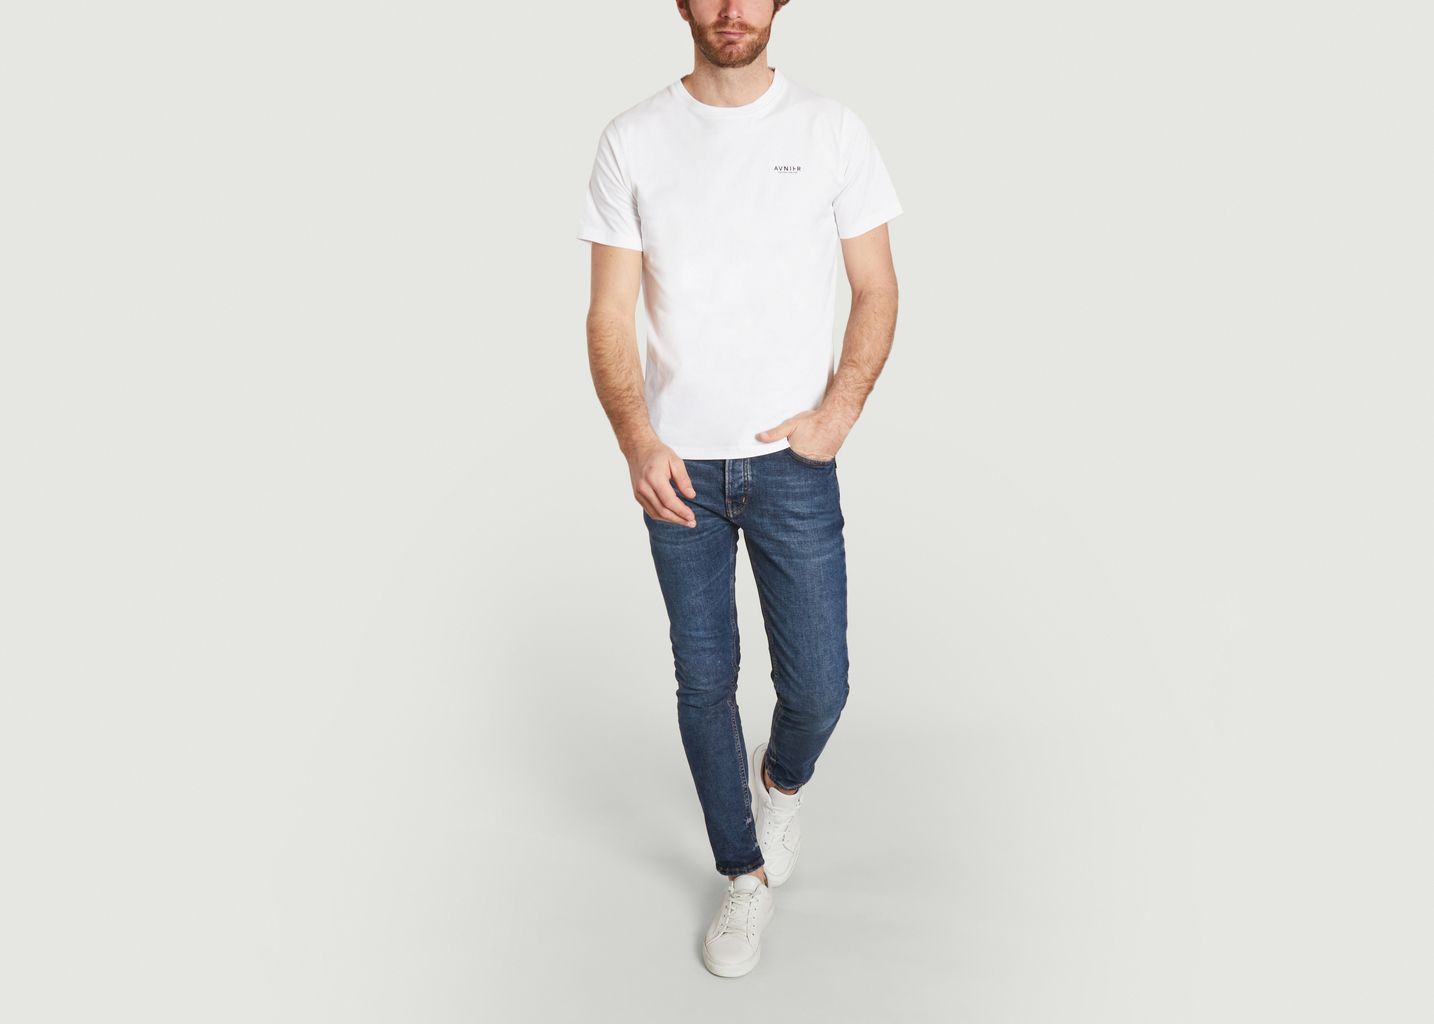 Source White Vertical V2 T-Shirt - AVNIER